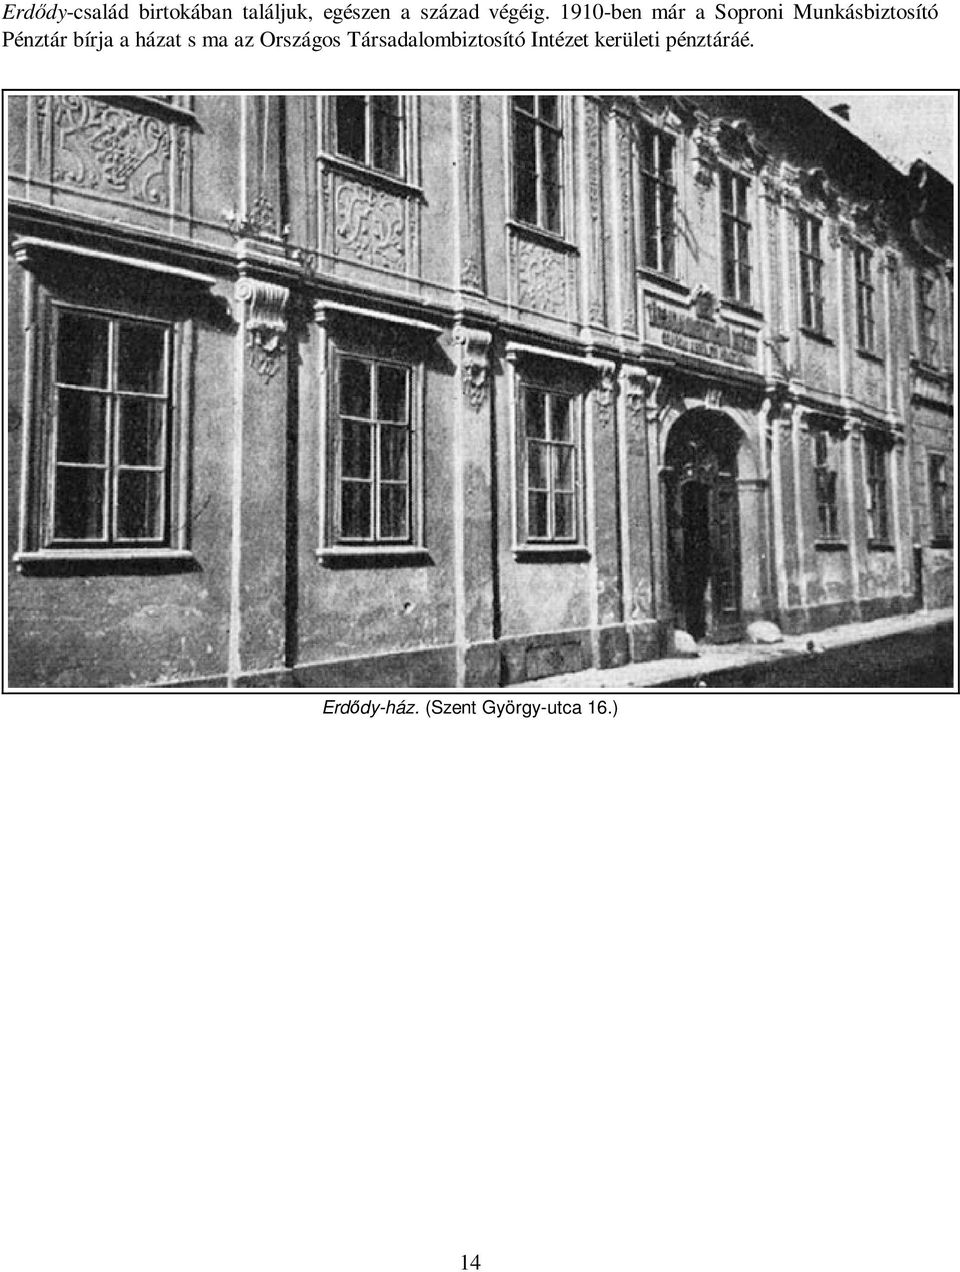 1910-ben már a Soproni Munkásbiztosító Pénztár bírja a